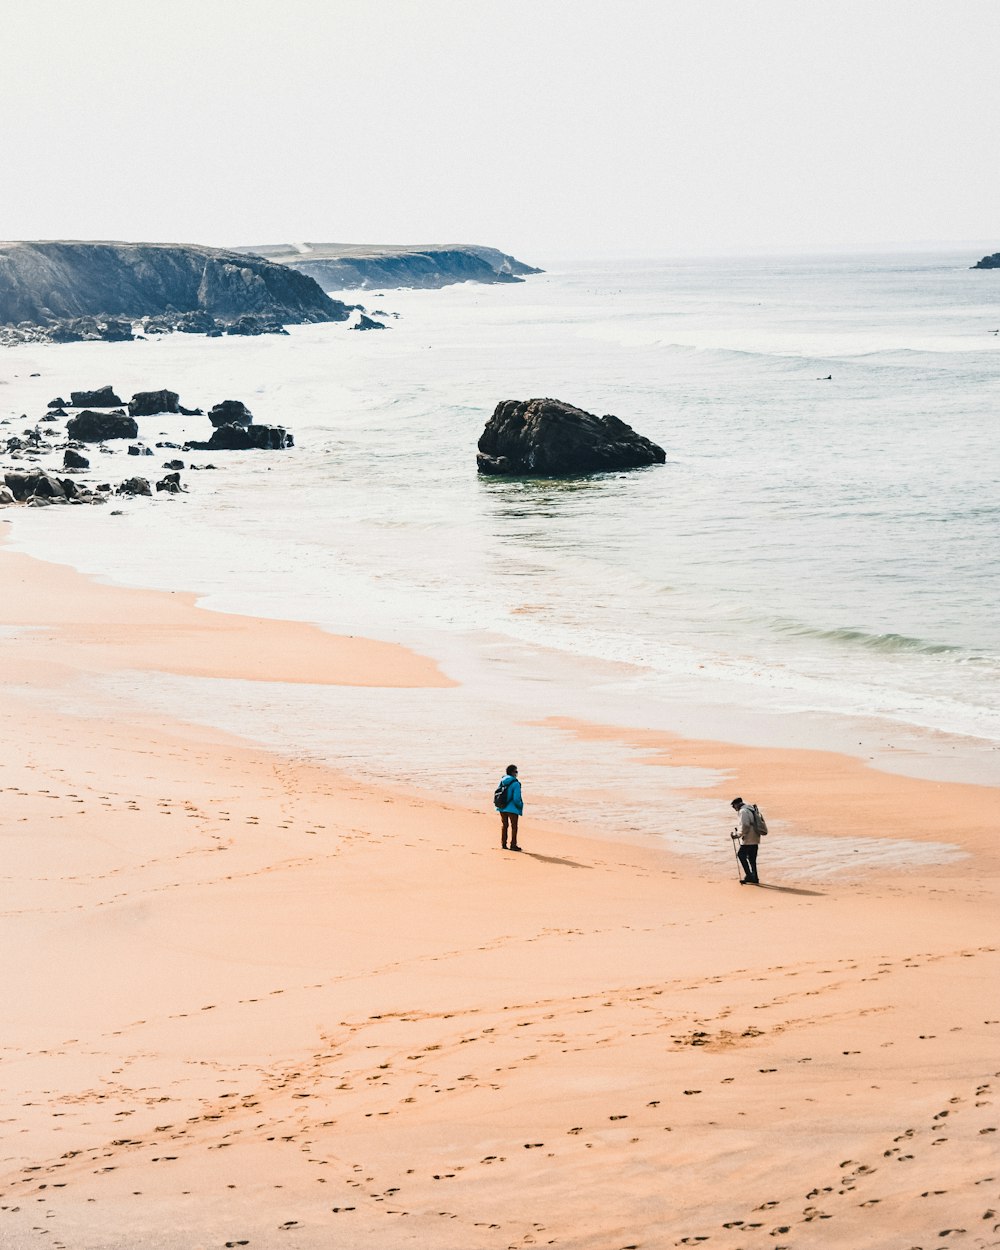 2 people walking on beach during daytime